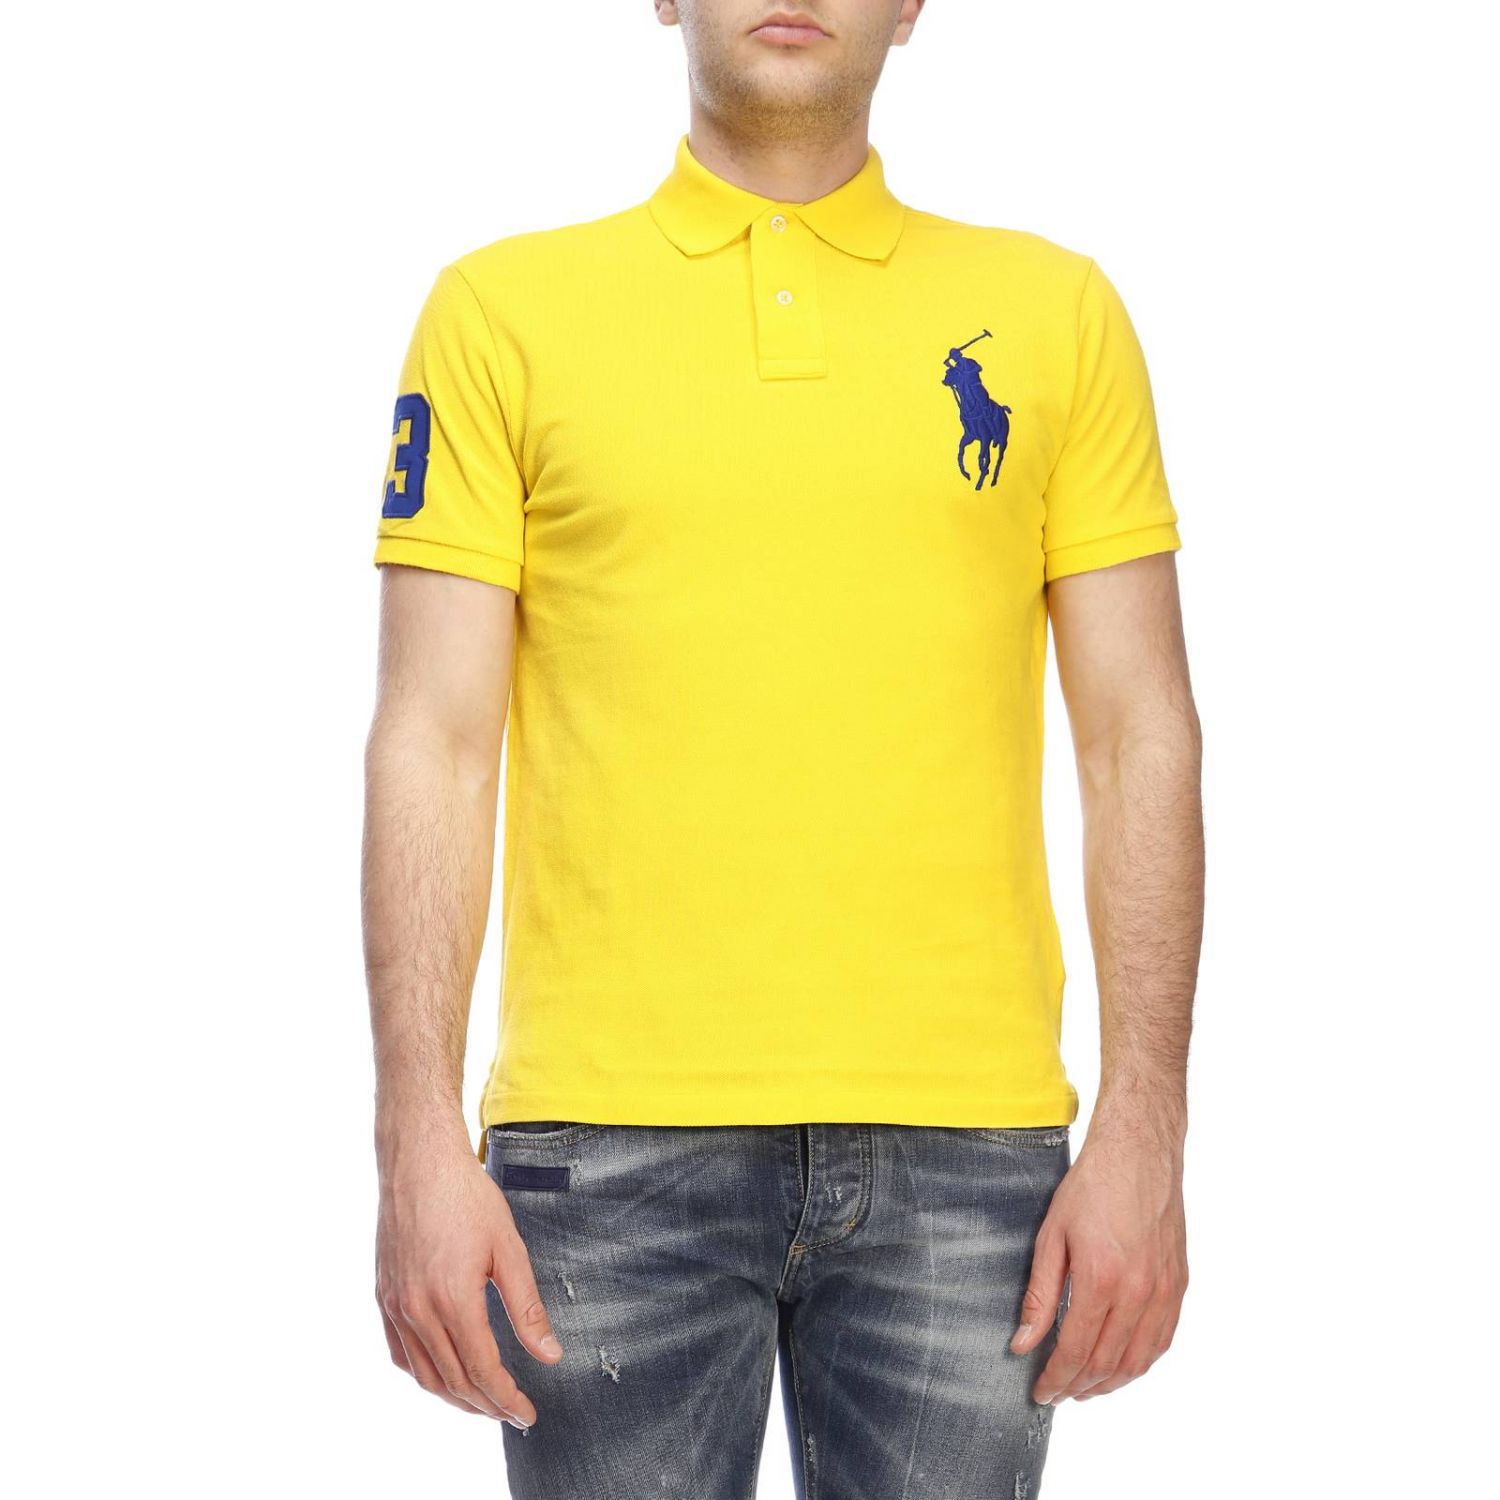 Polo Ralph Lauren Outlet: t-shirt for man - Yellow | Polo Ralph Lauren t- shirt 710692227 online on 